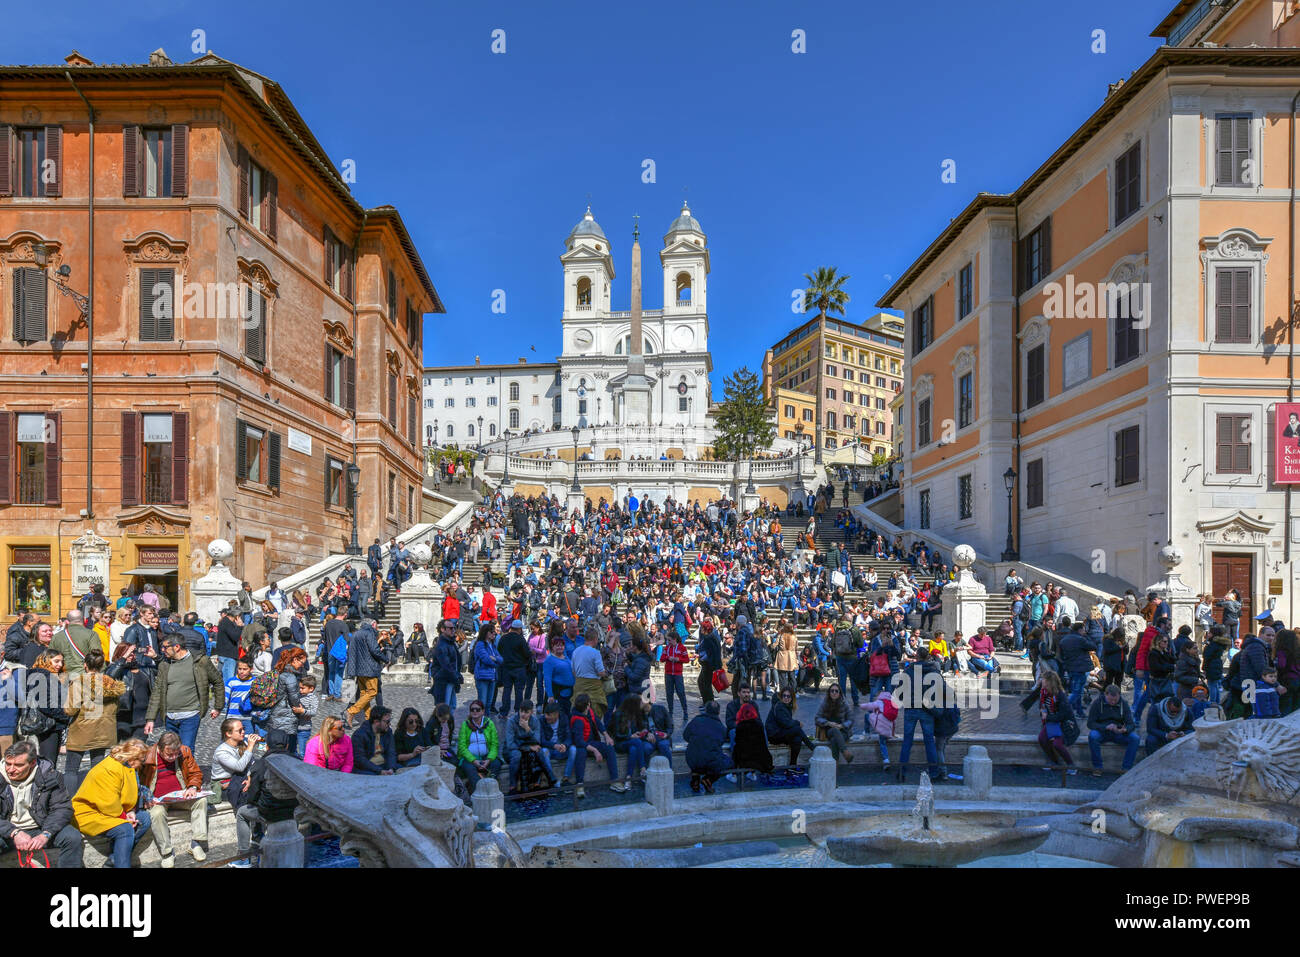 Roma, Italia - 25 Marzo 2018: la Scalinata di piazza di Spagna, visto dalla Piazza di Spagna (Piazza di Spagna). La Scalinata di piazza di Spagna sono la più ampia scala in Europa. Foto Stock